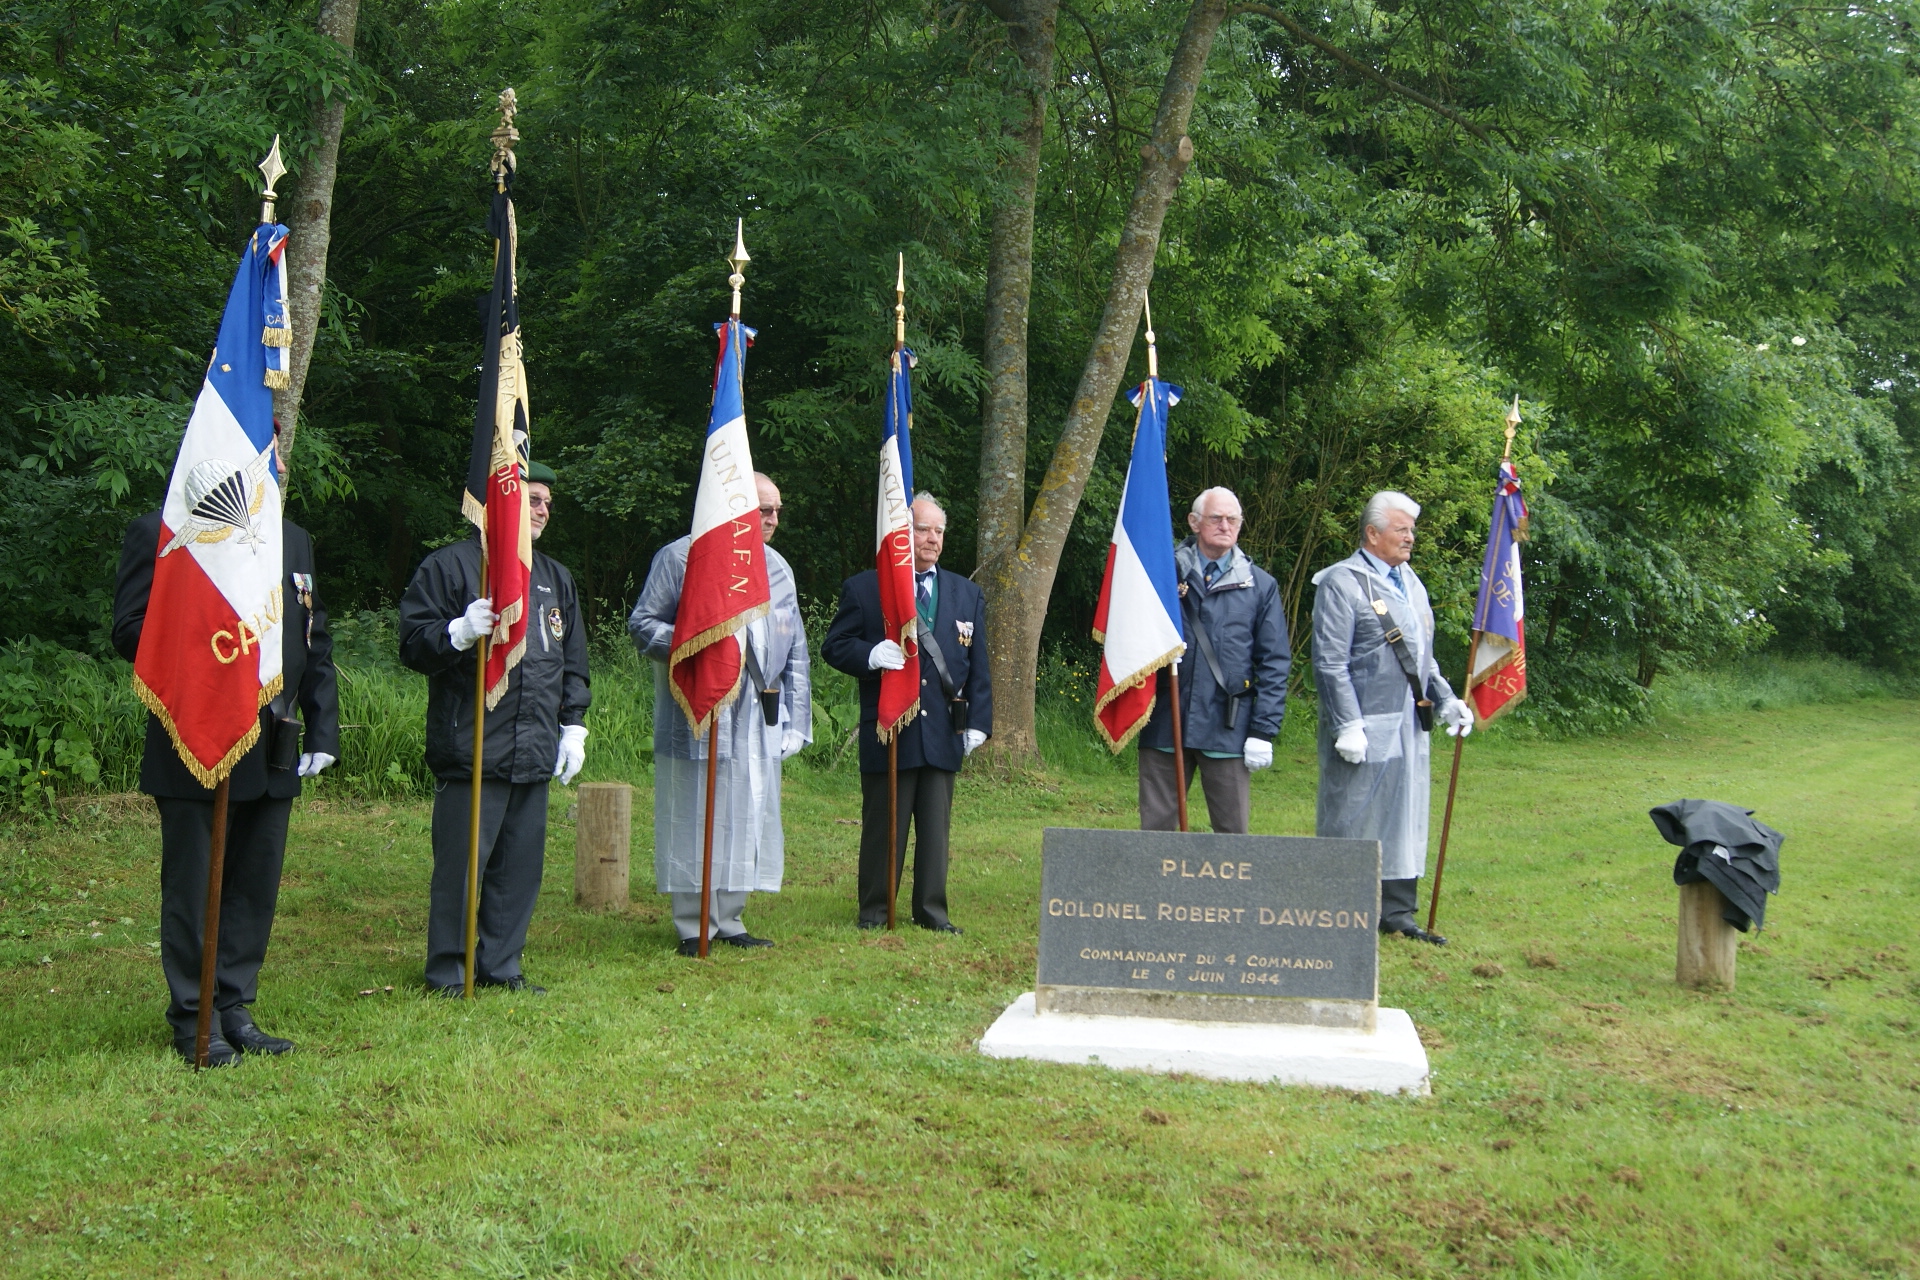 Le Hauger Amfreville, Calvados, 4/6/2012 - Col Dawson  OC No.4 Commando Memorial.